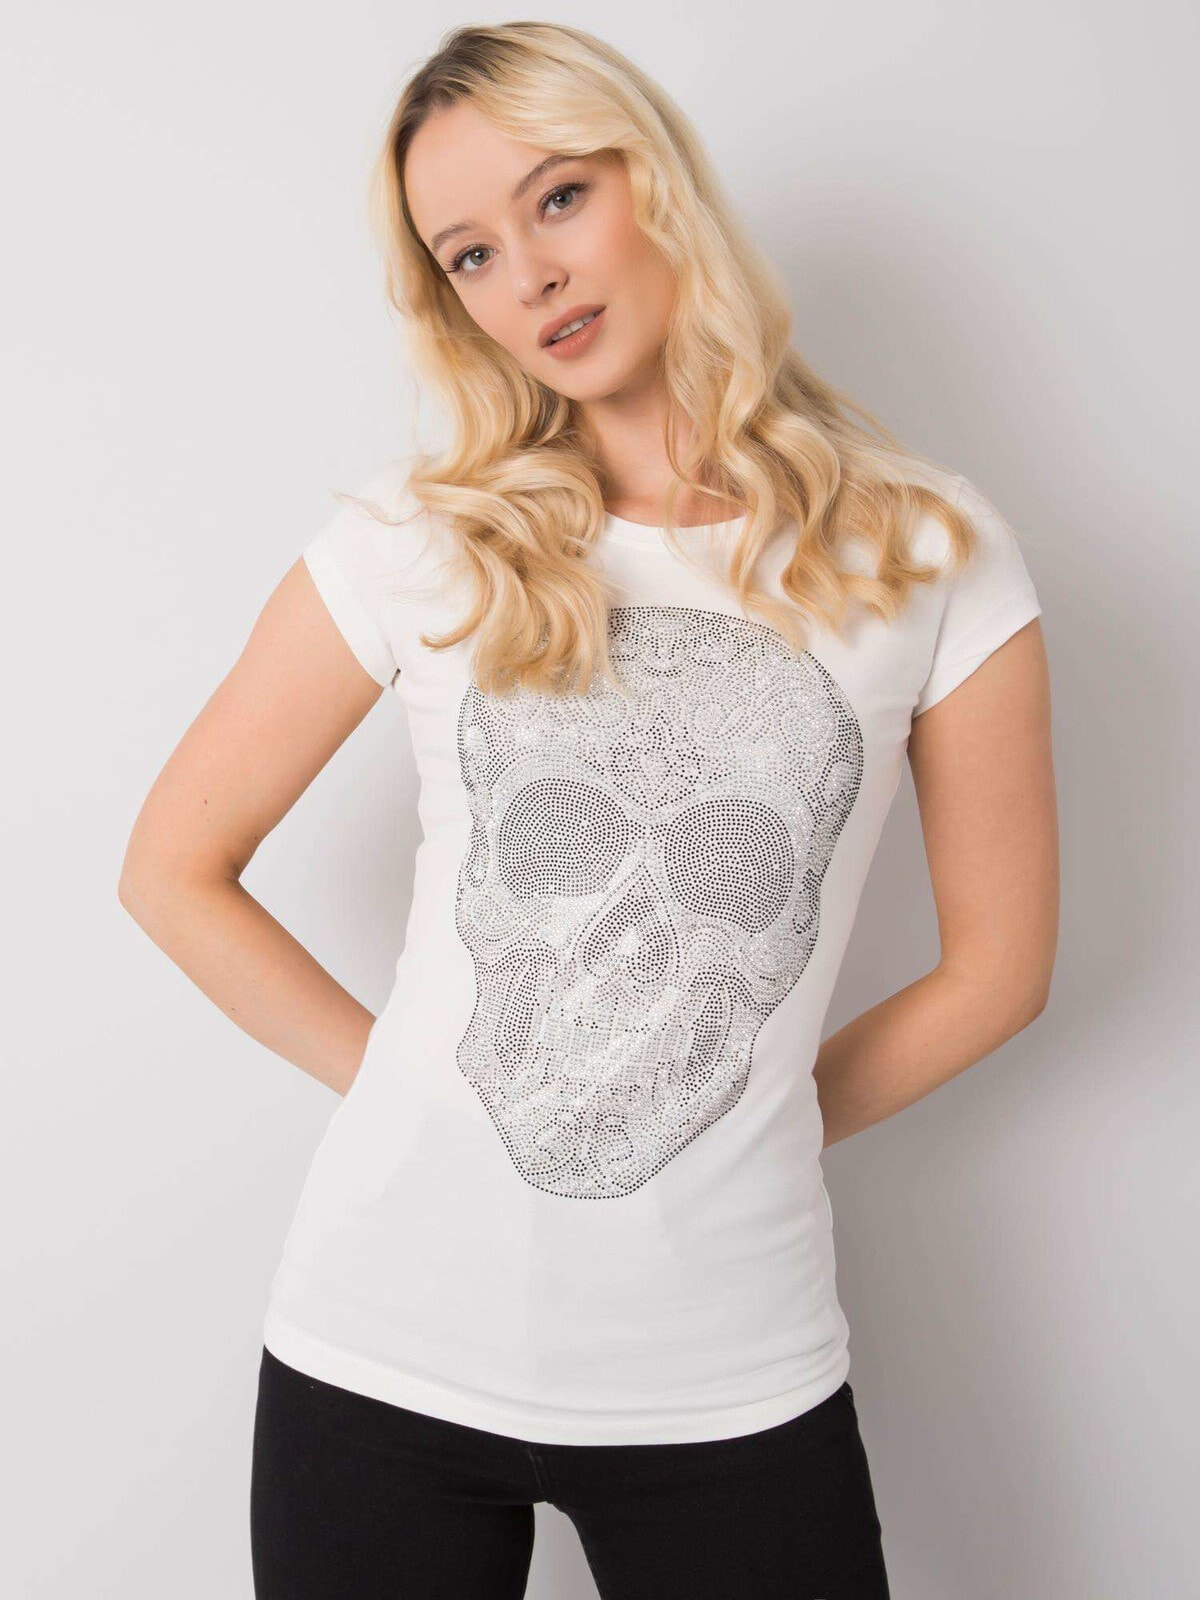 Женская футболка удлиненная коралловая с принтом Череп Factory Price